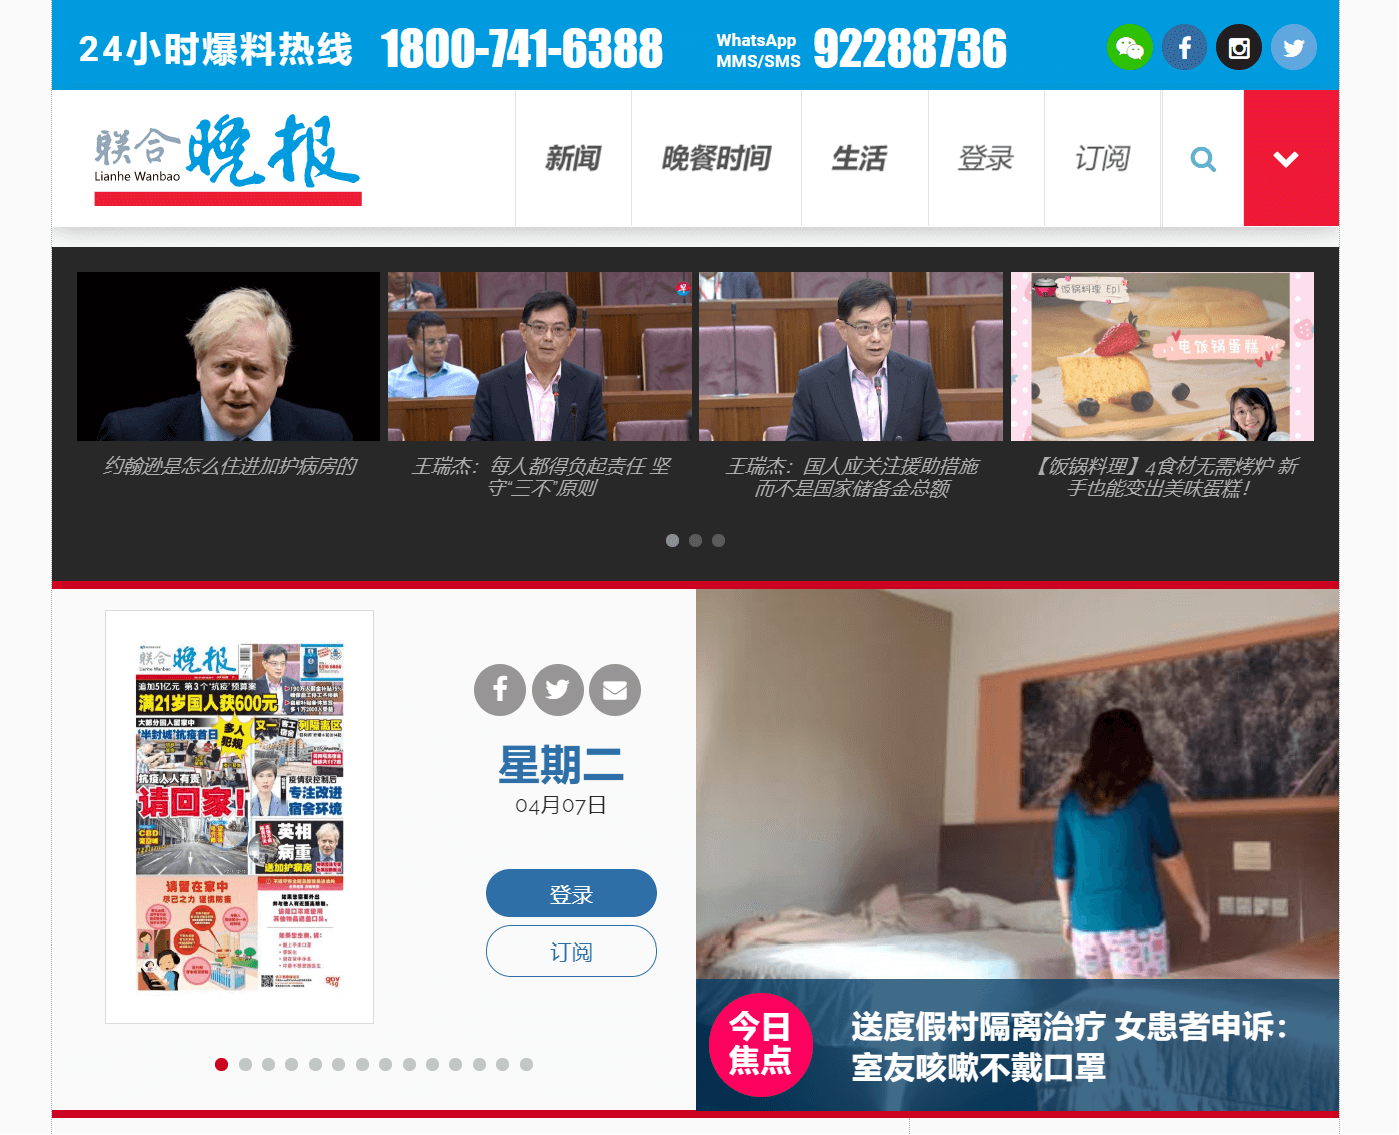 Singapore Newspapers 11 Lianhe Wanbao Website